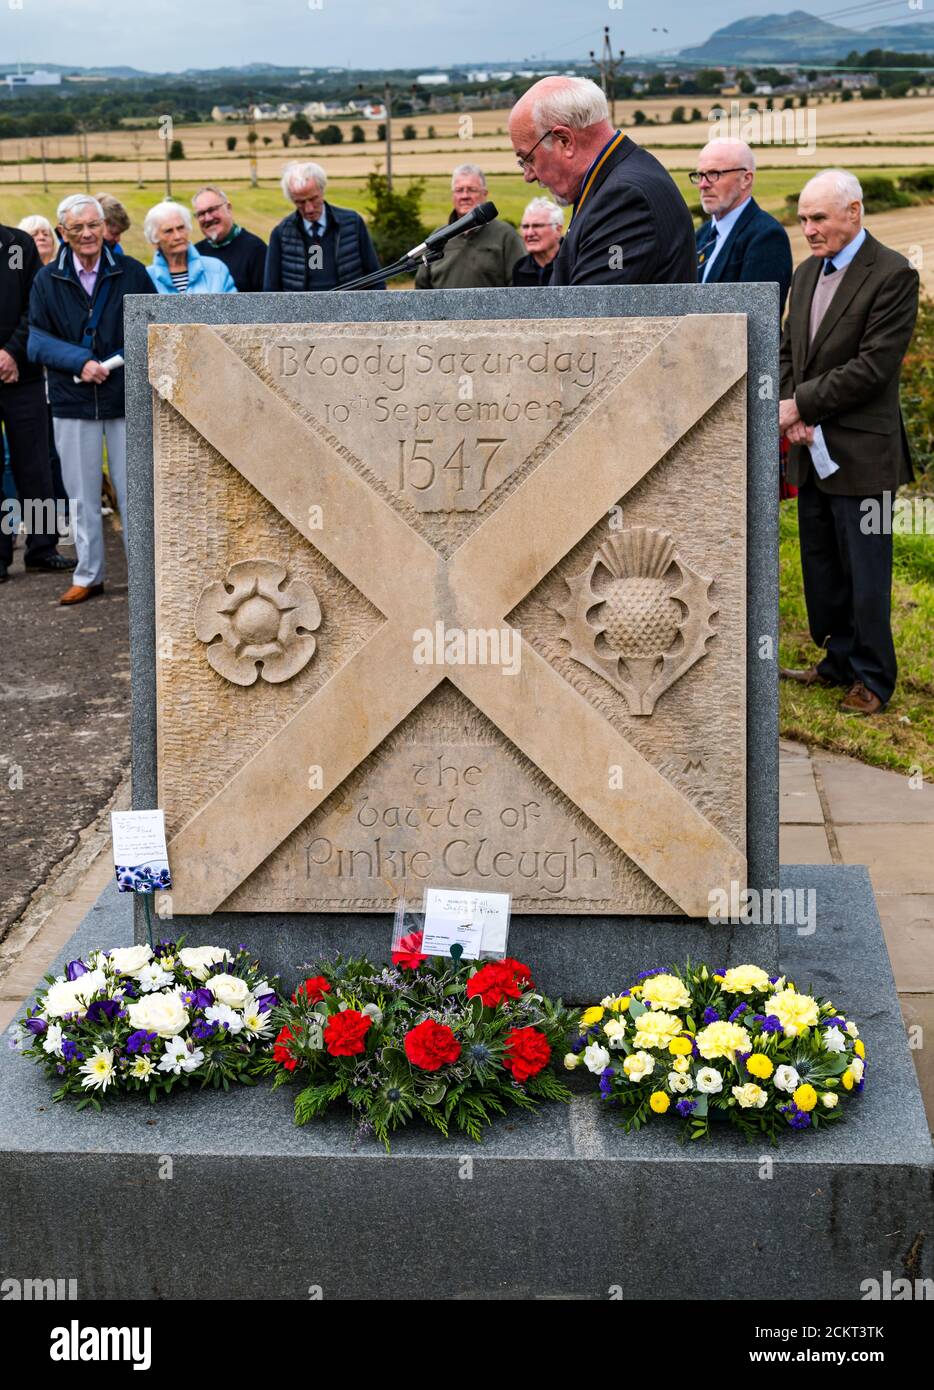 David Stillie hielt eine Rede bei der Gedenkfeier der Schlacht von Pinkie Cleugh auf dem Schlachtfeld-Denkmal, East Lothian, Schottland, Großbritannien Stockfoto